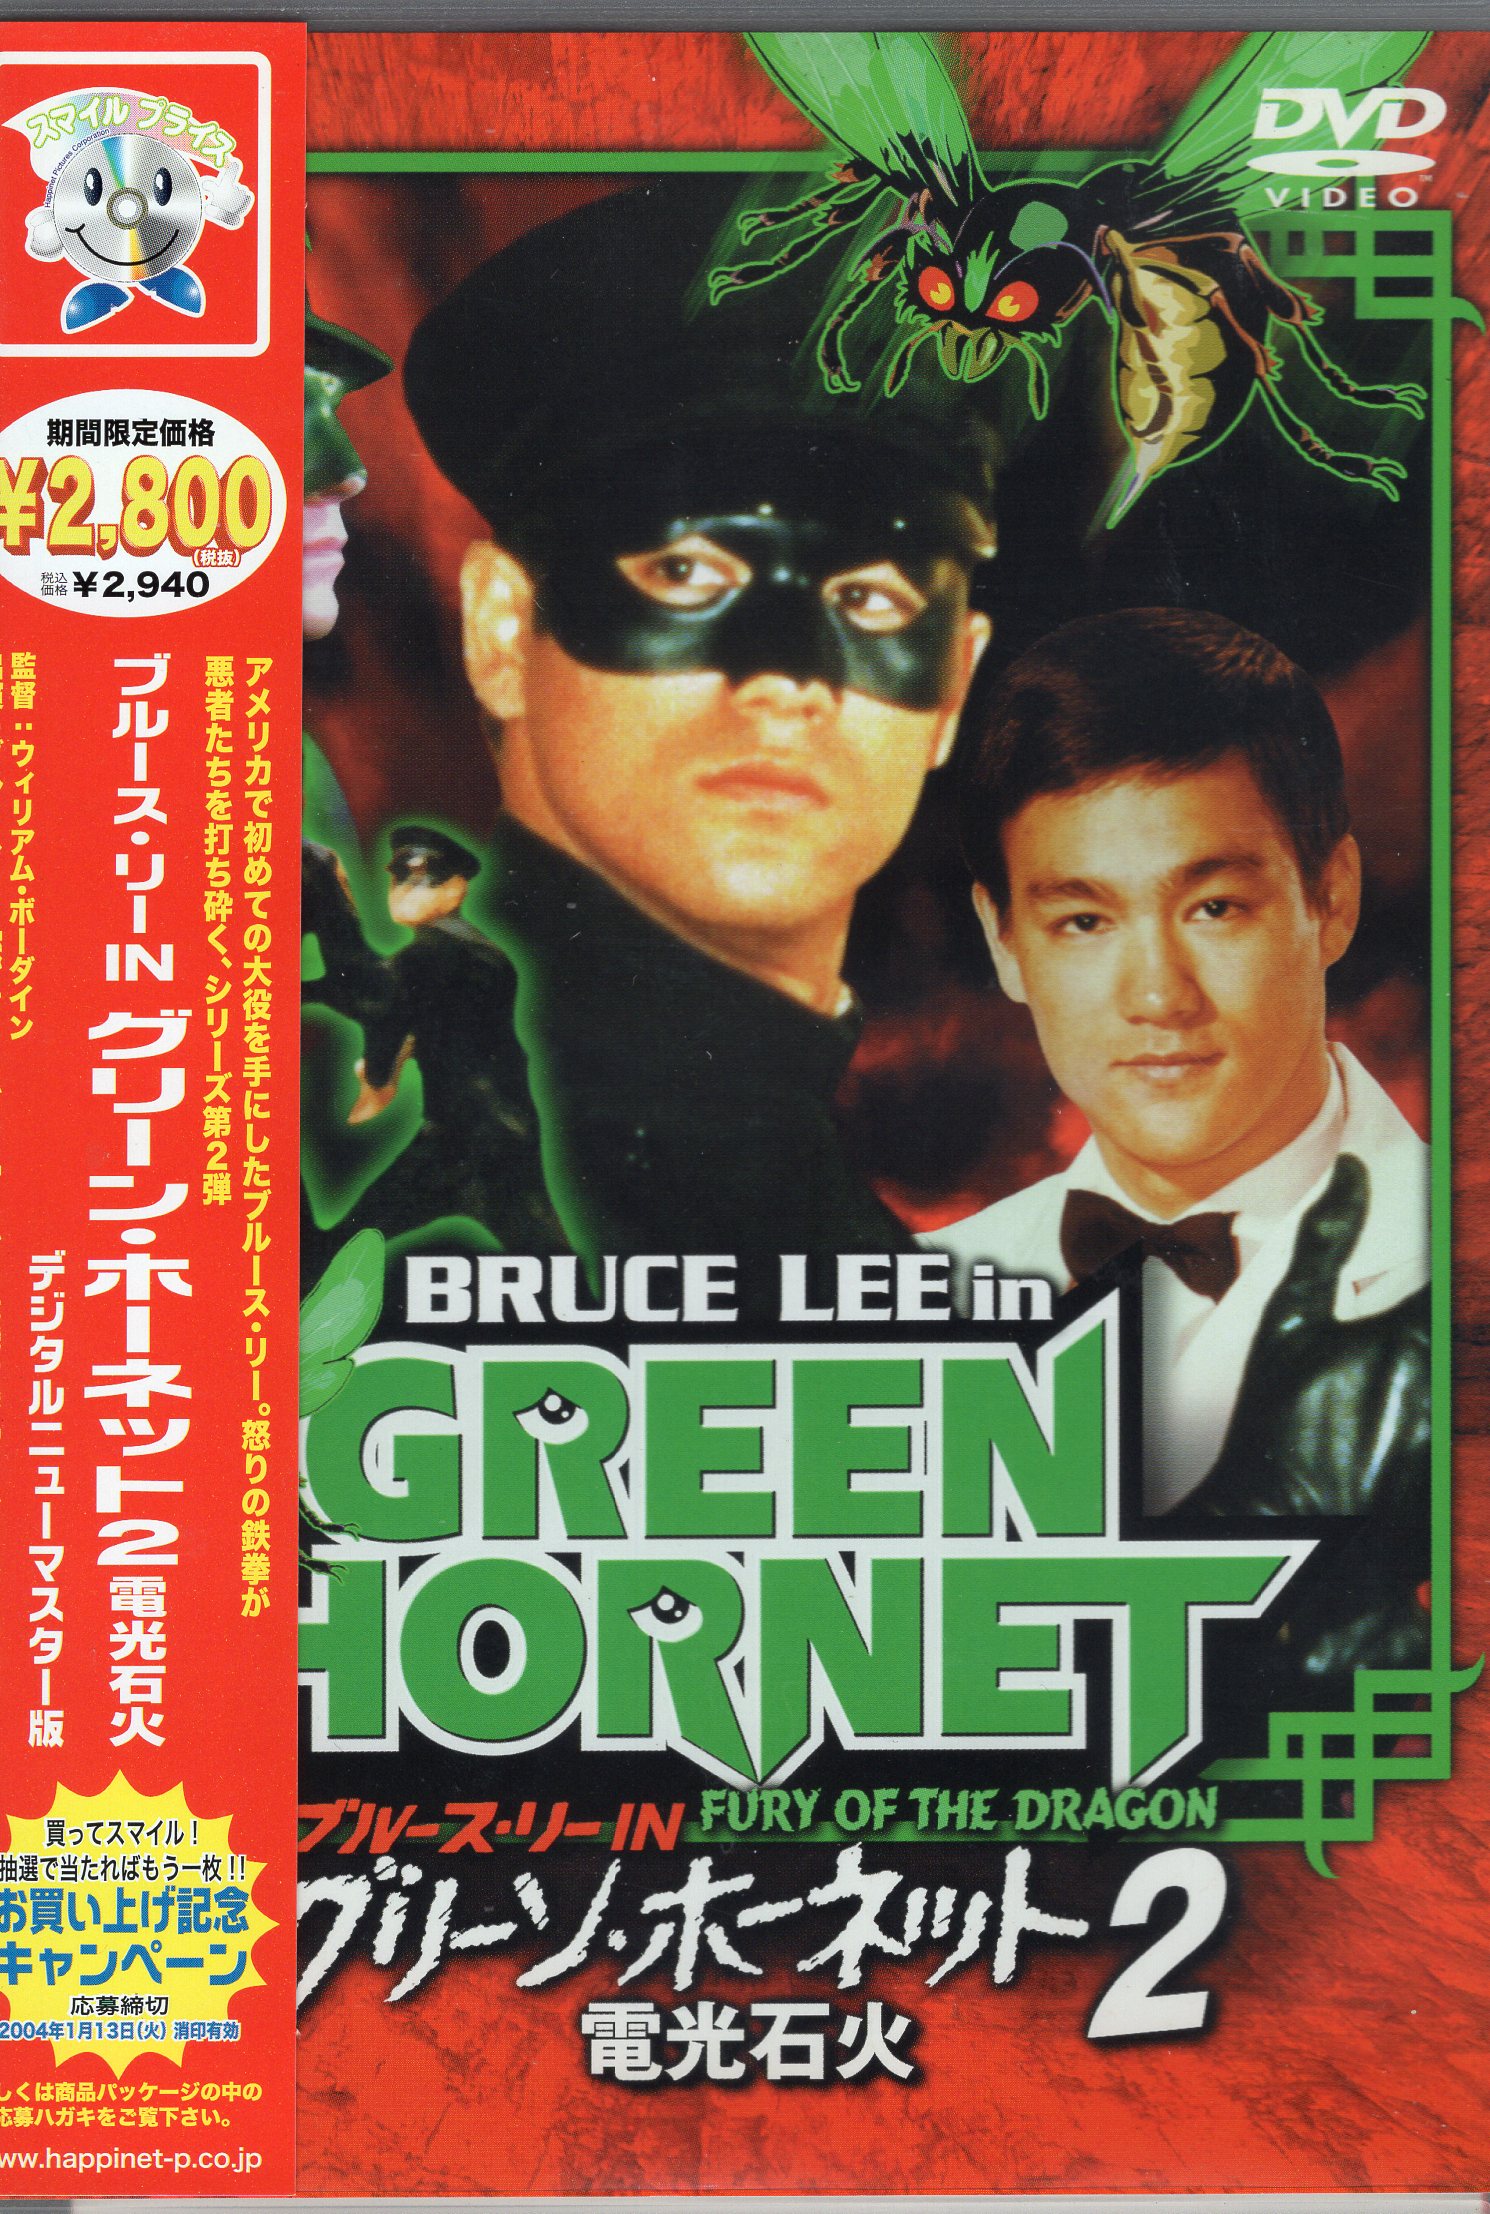 外国映画DVD グリーン・ホーネット2 電光石火 デジタルニューマスター